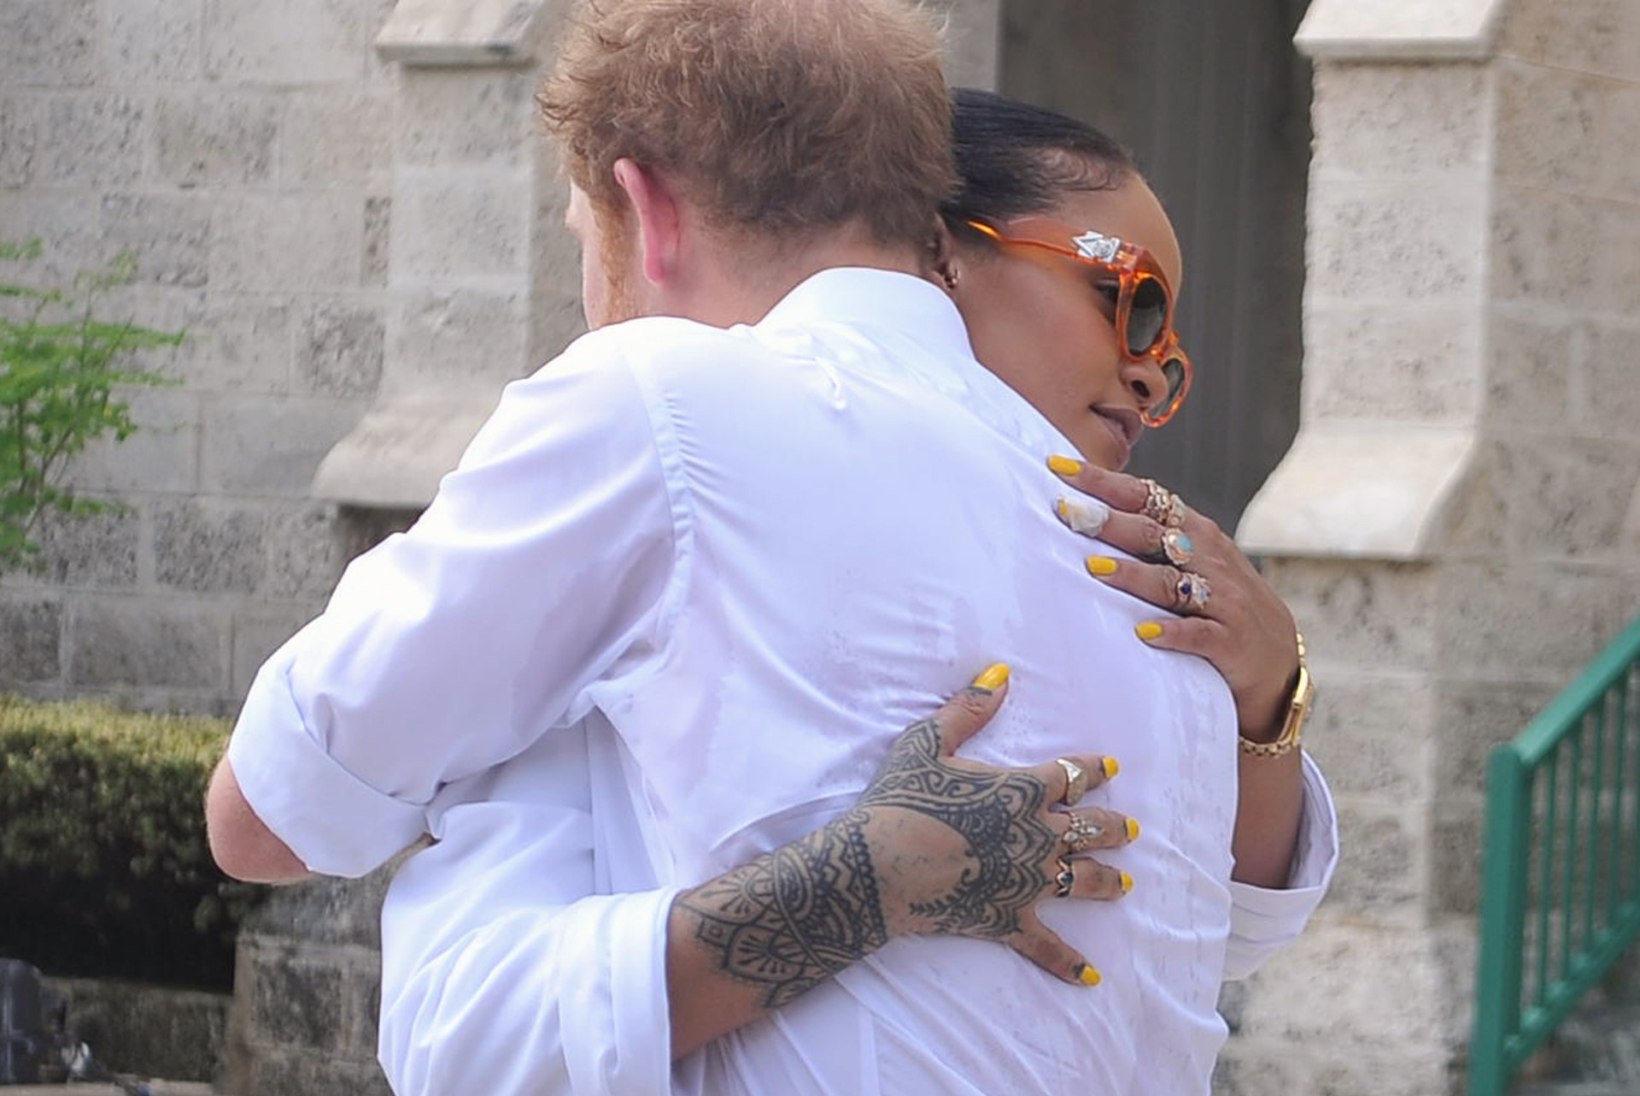 LIIG MIS LIIG: Rihanna avaldas kuningannast litsakaid pilte